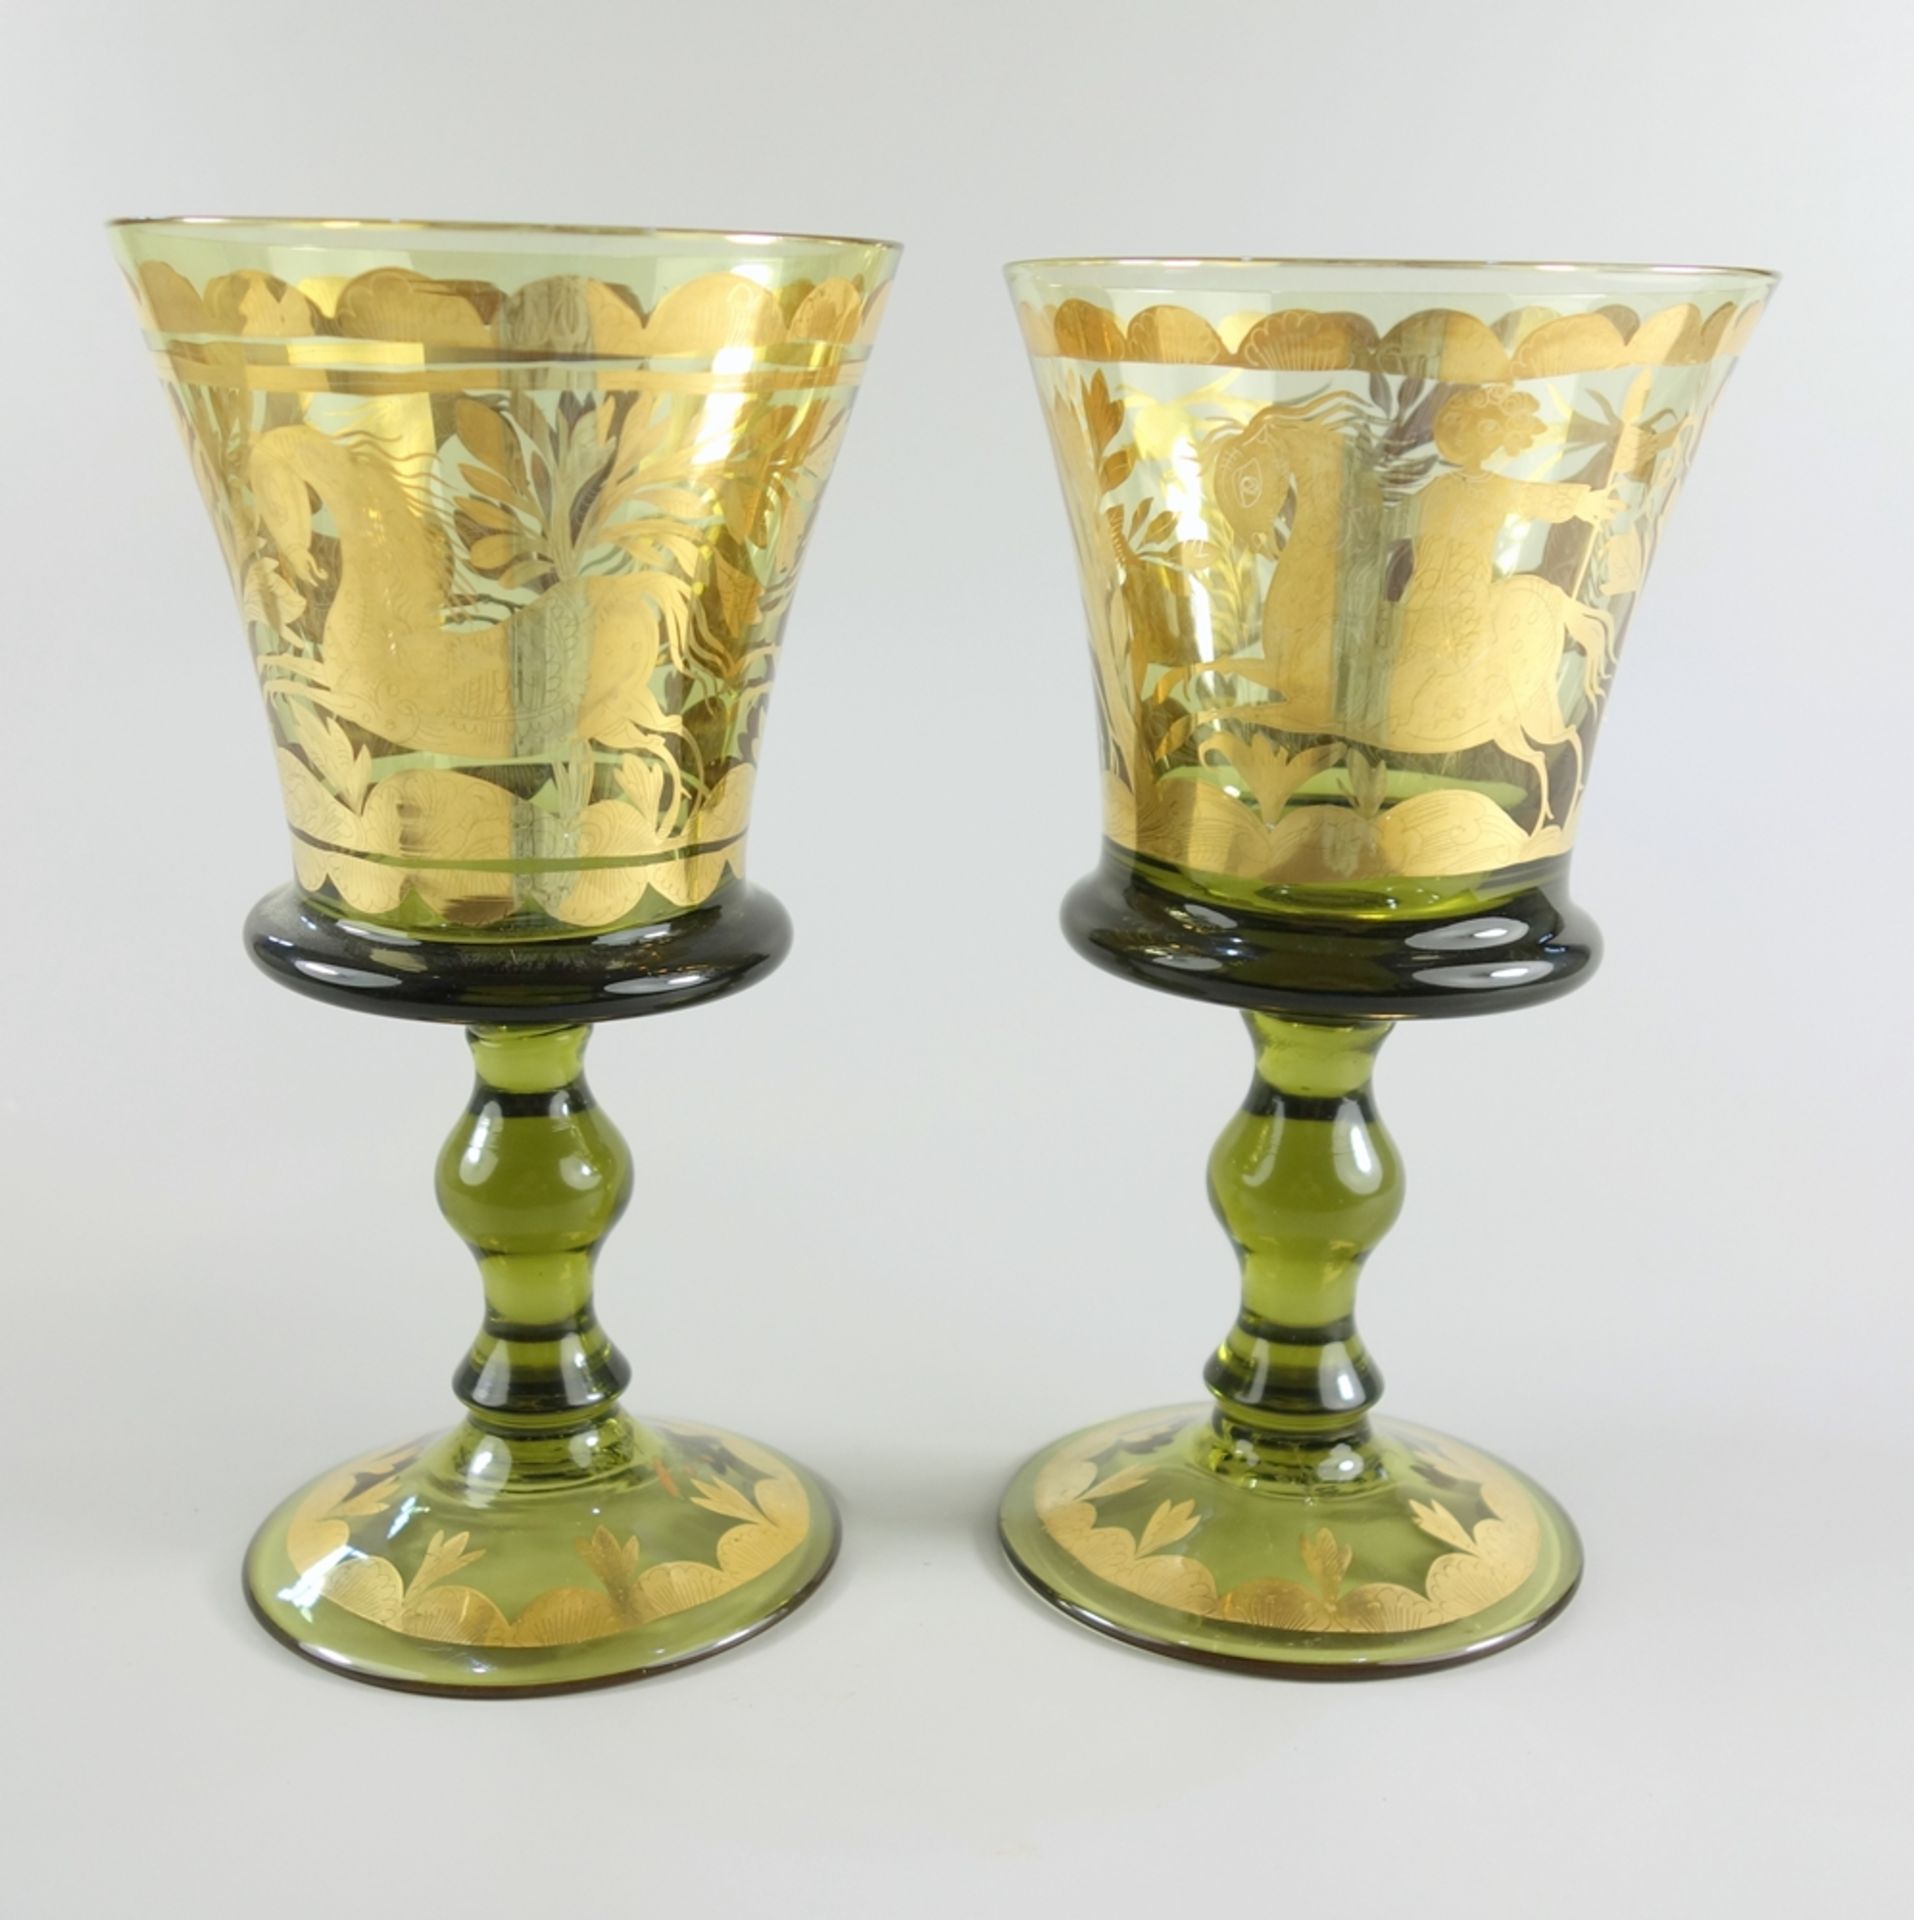 2 Gläser, Grünglas mit Golddekor, Meran Südtirol, datiert 1974, H.15,8cm, 1 Gla